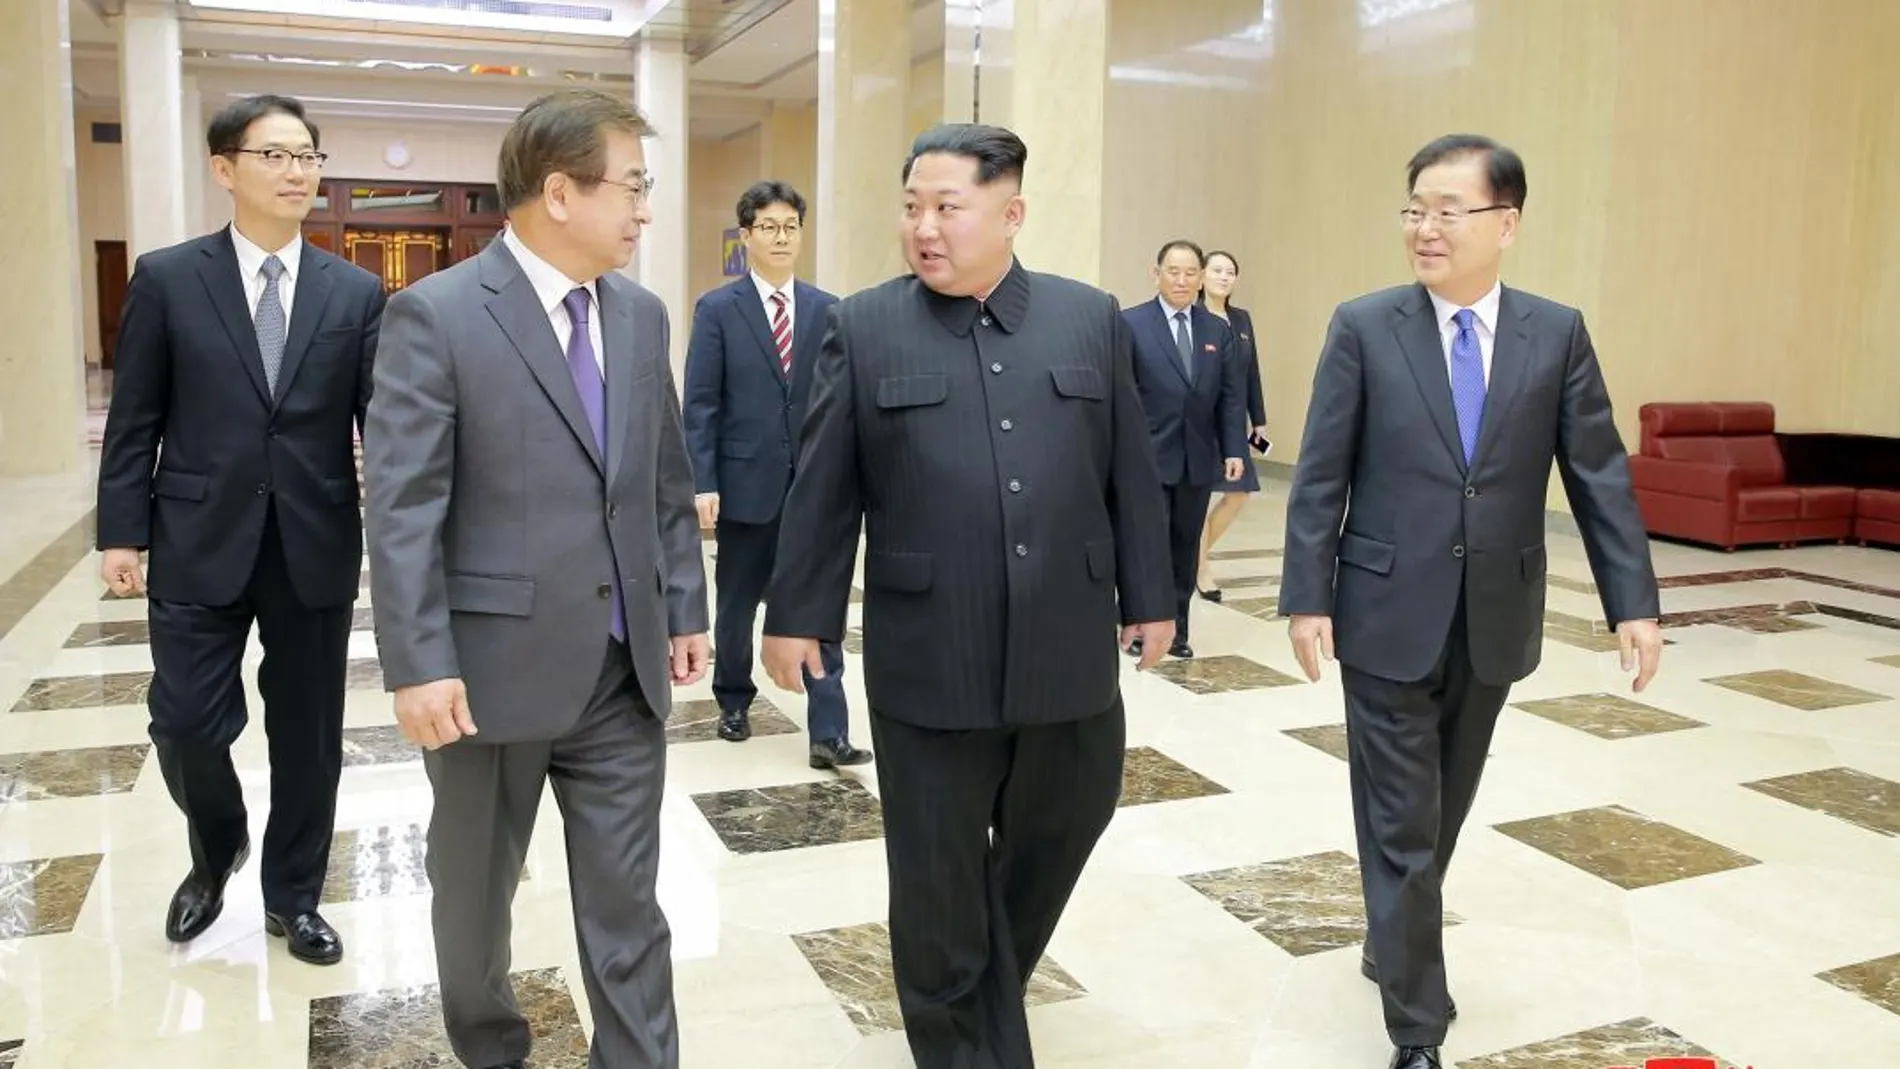 El líder de Corea del Norte Kim Jong-un (c) mientras conversa con el jefe de la Oficina de Seguridad Nacional presidencial de Corea del Sur Chung Eui-yong (d) y miembros de la delegación surcoreana antes de una reunión ayer Pyongyang (Corea del Norte)